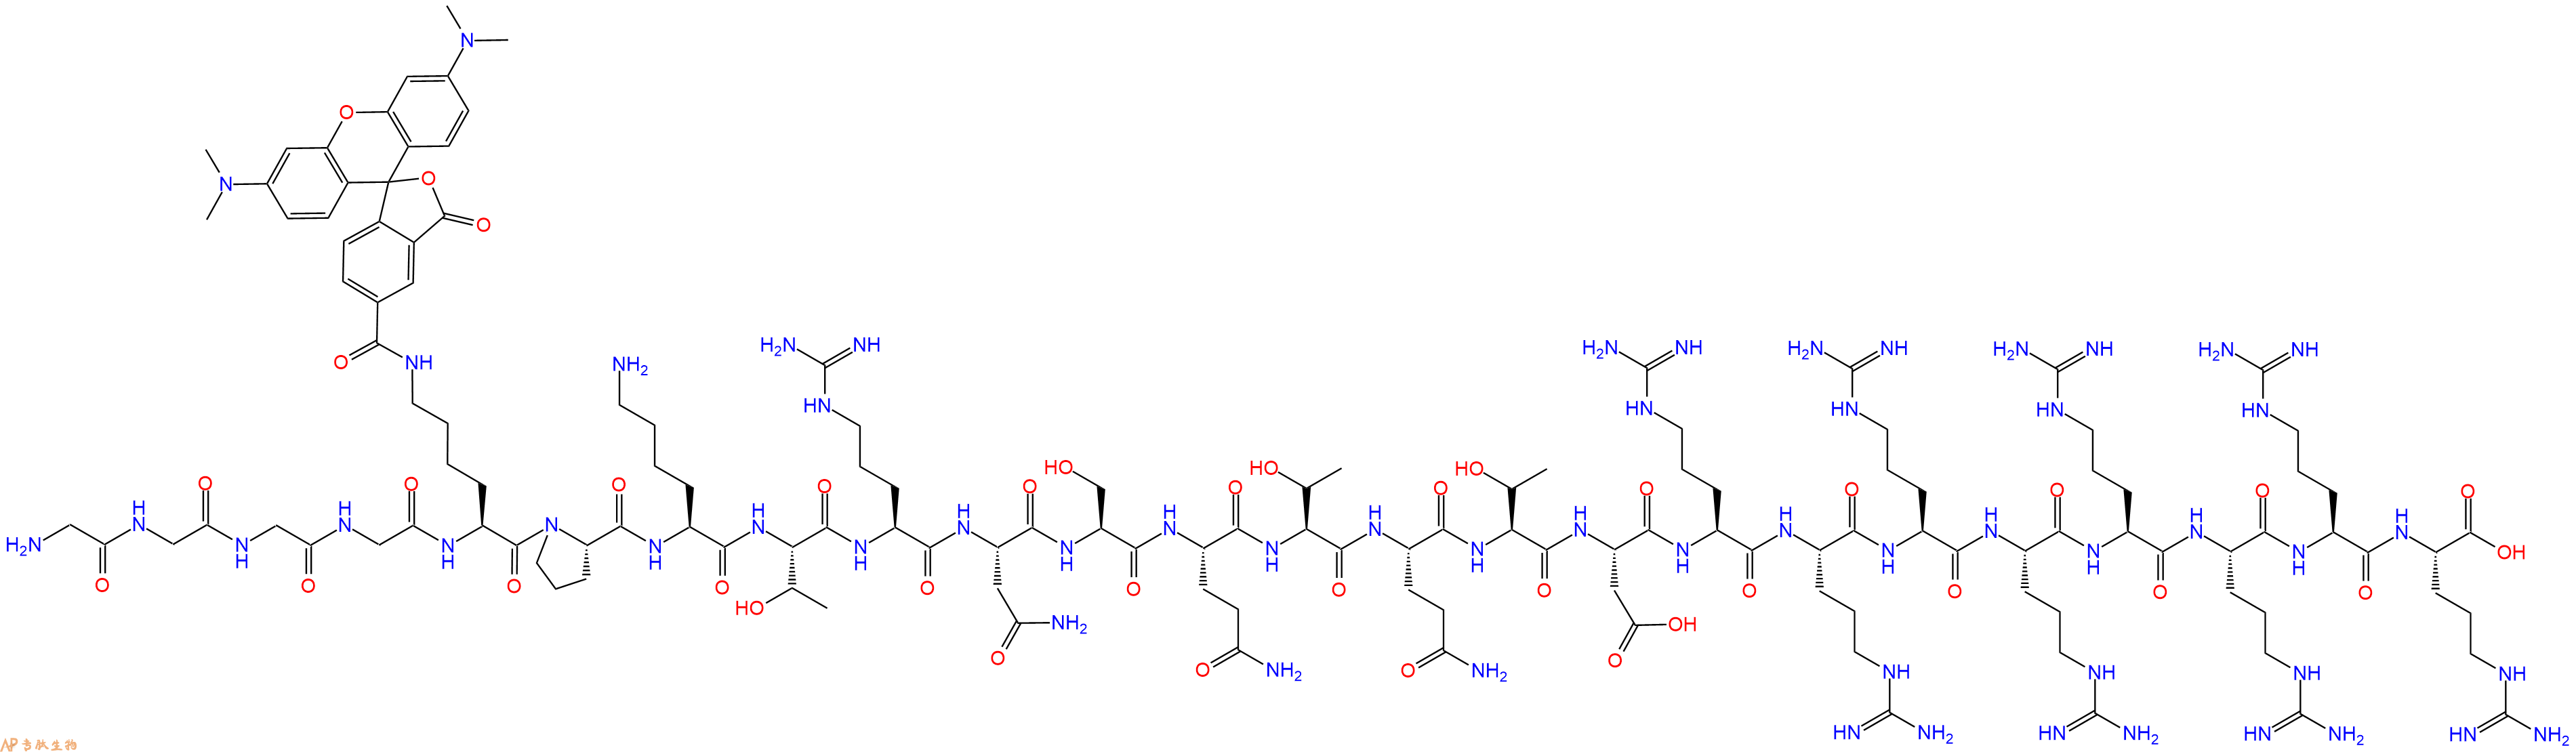 专肽生物产品二十四肽GGGG-K(TAMRA)-PKTRNSQTQTDRRRRRRRR